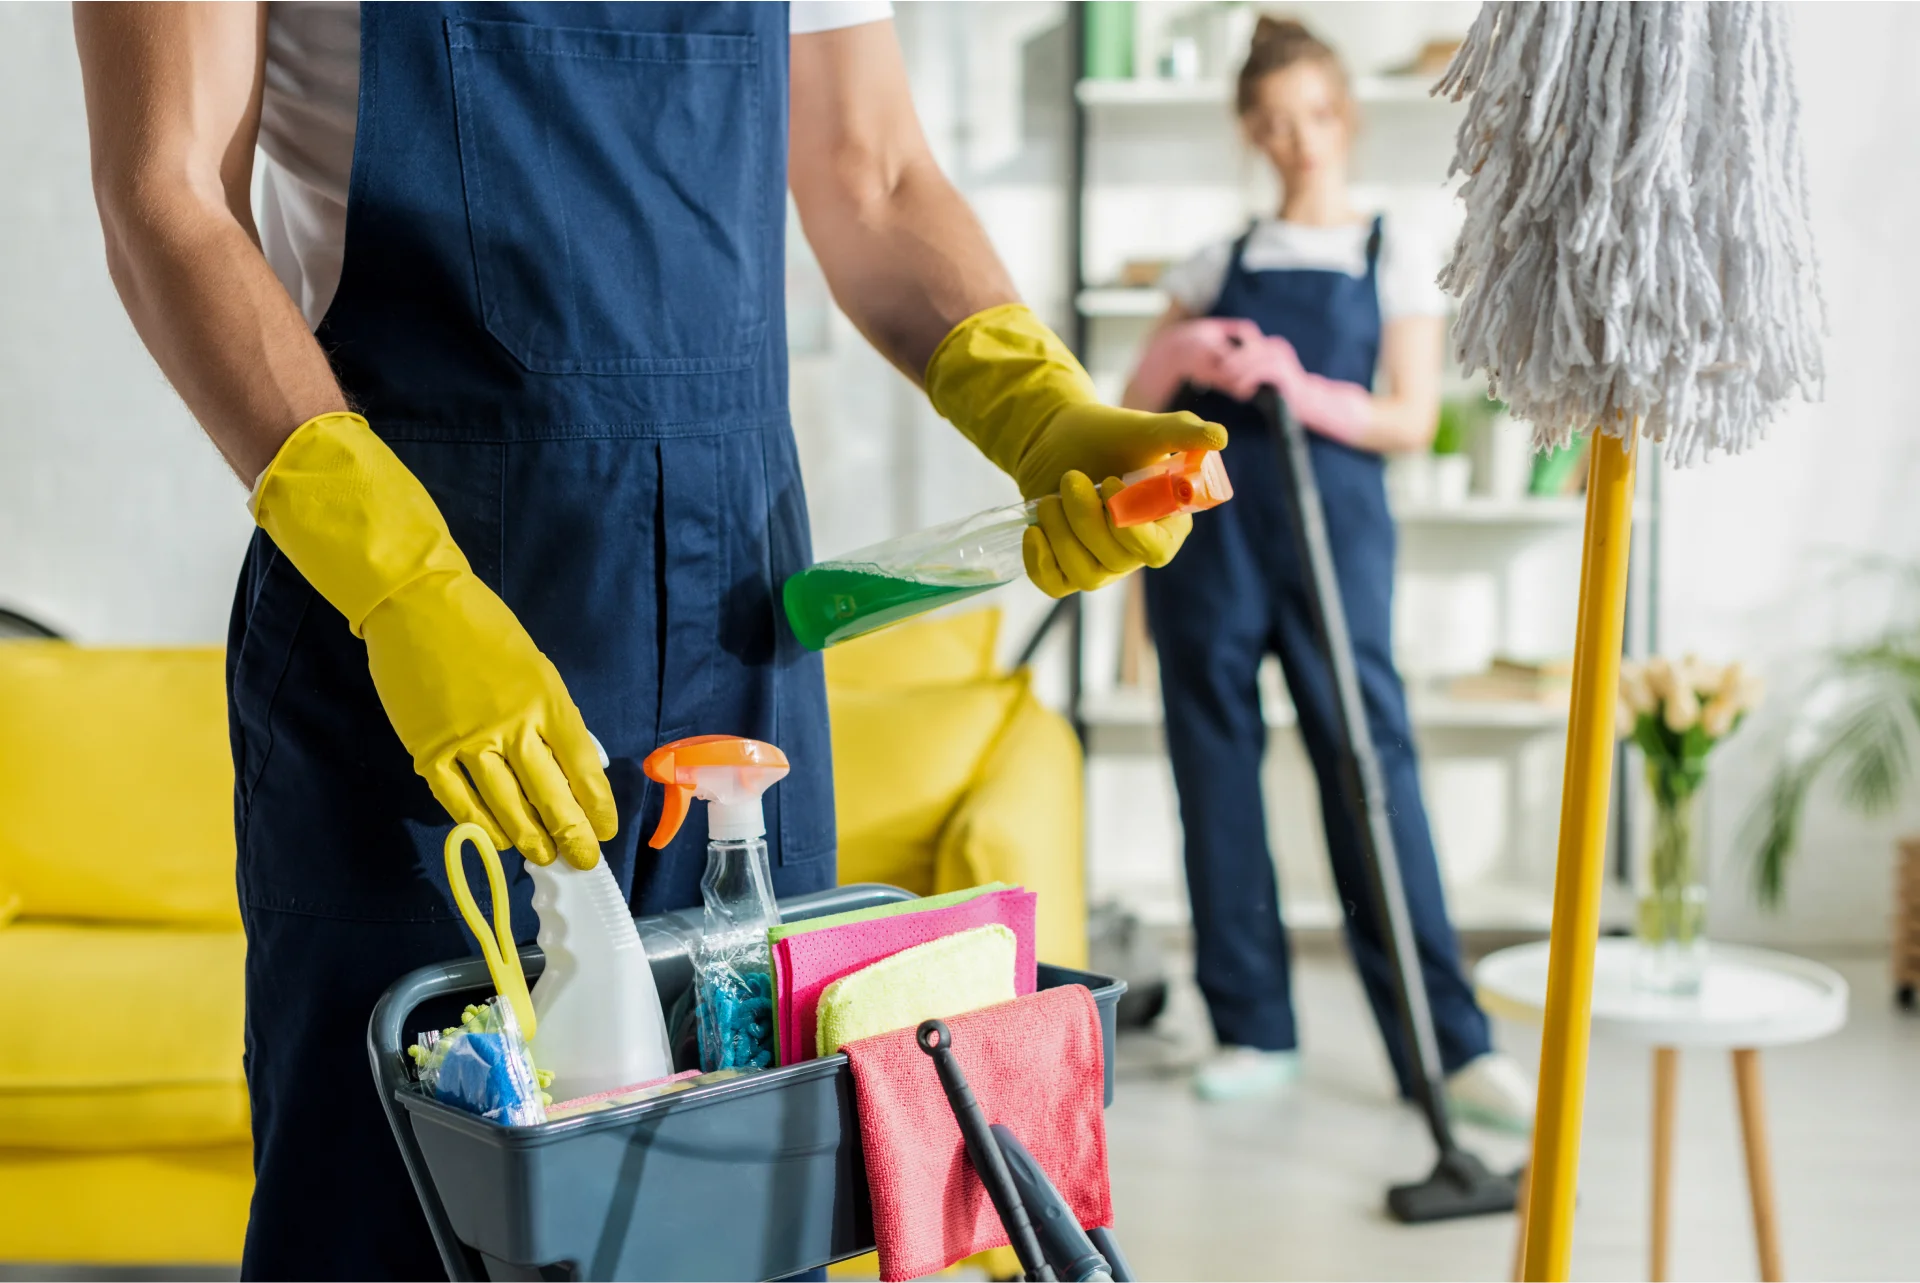 Productos de limpieza para nuestro hogar o lugar de trabajo